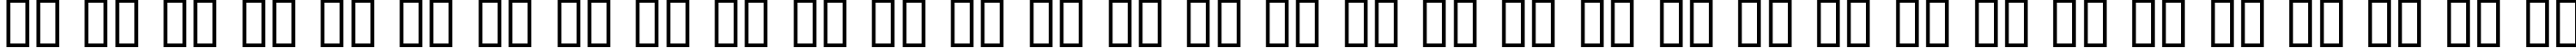 Пример написания русского алфавита шрифтом Volt